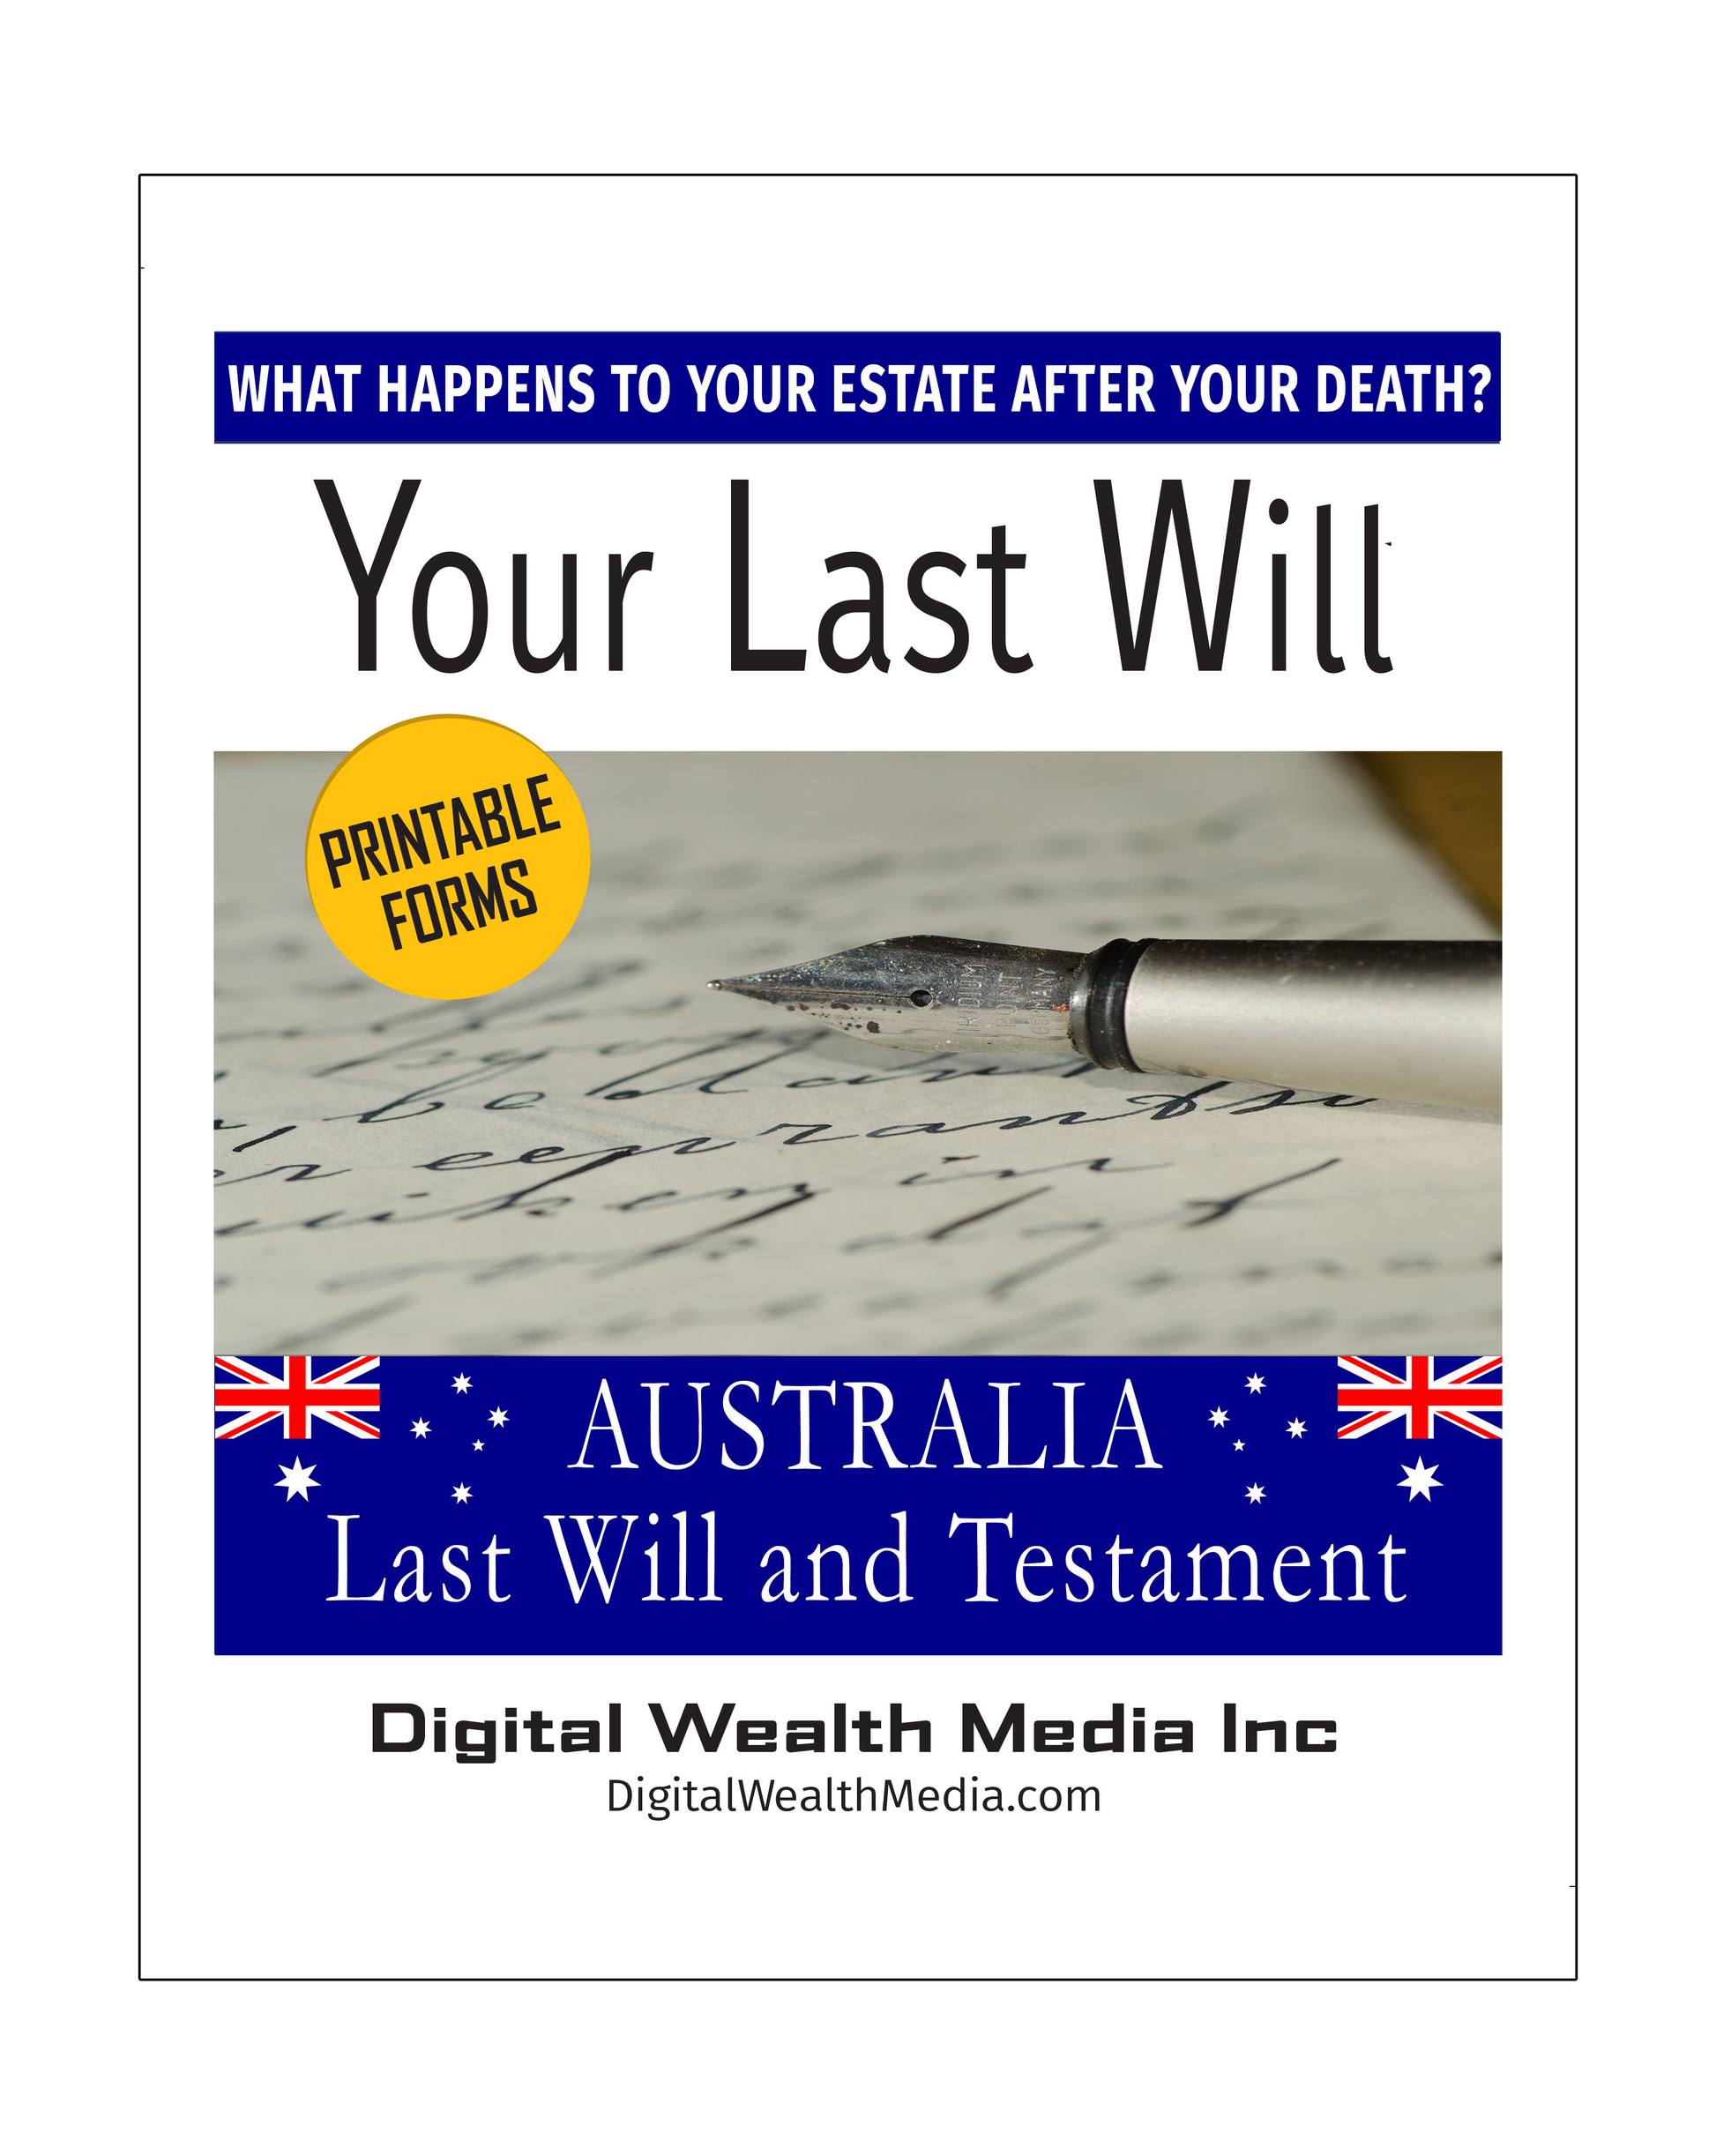 Australia Last Will and Testament